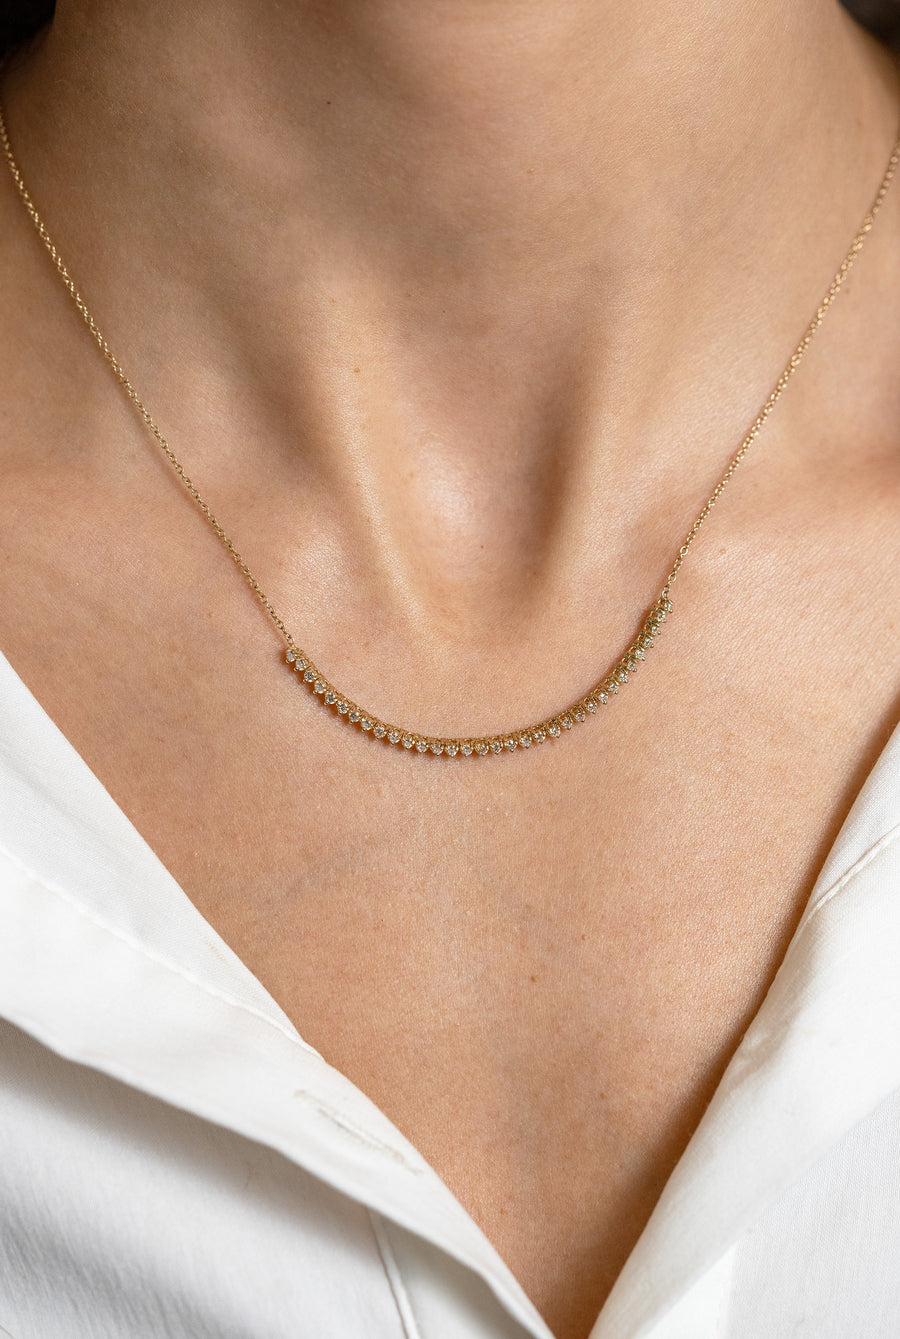 Zoe Chicco Diamond Segment Necklace